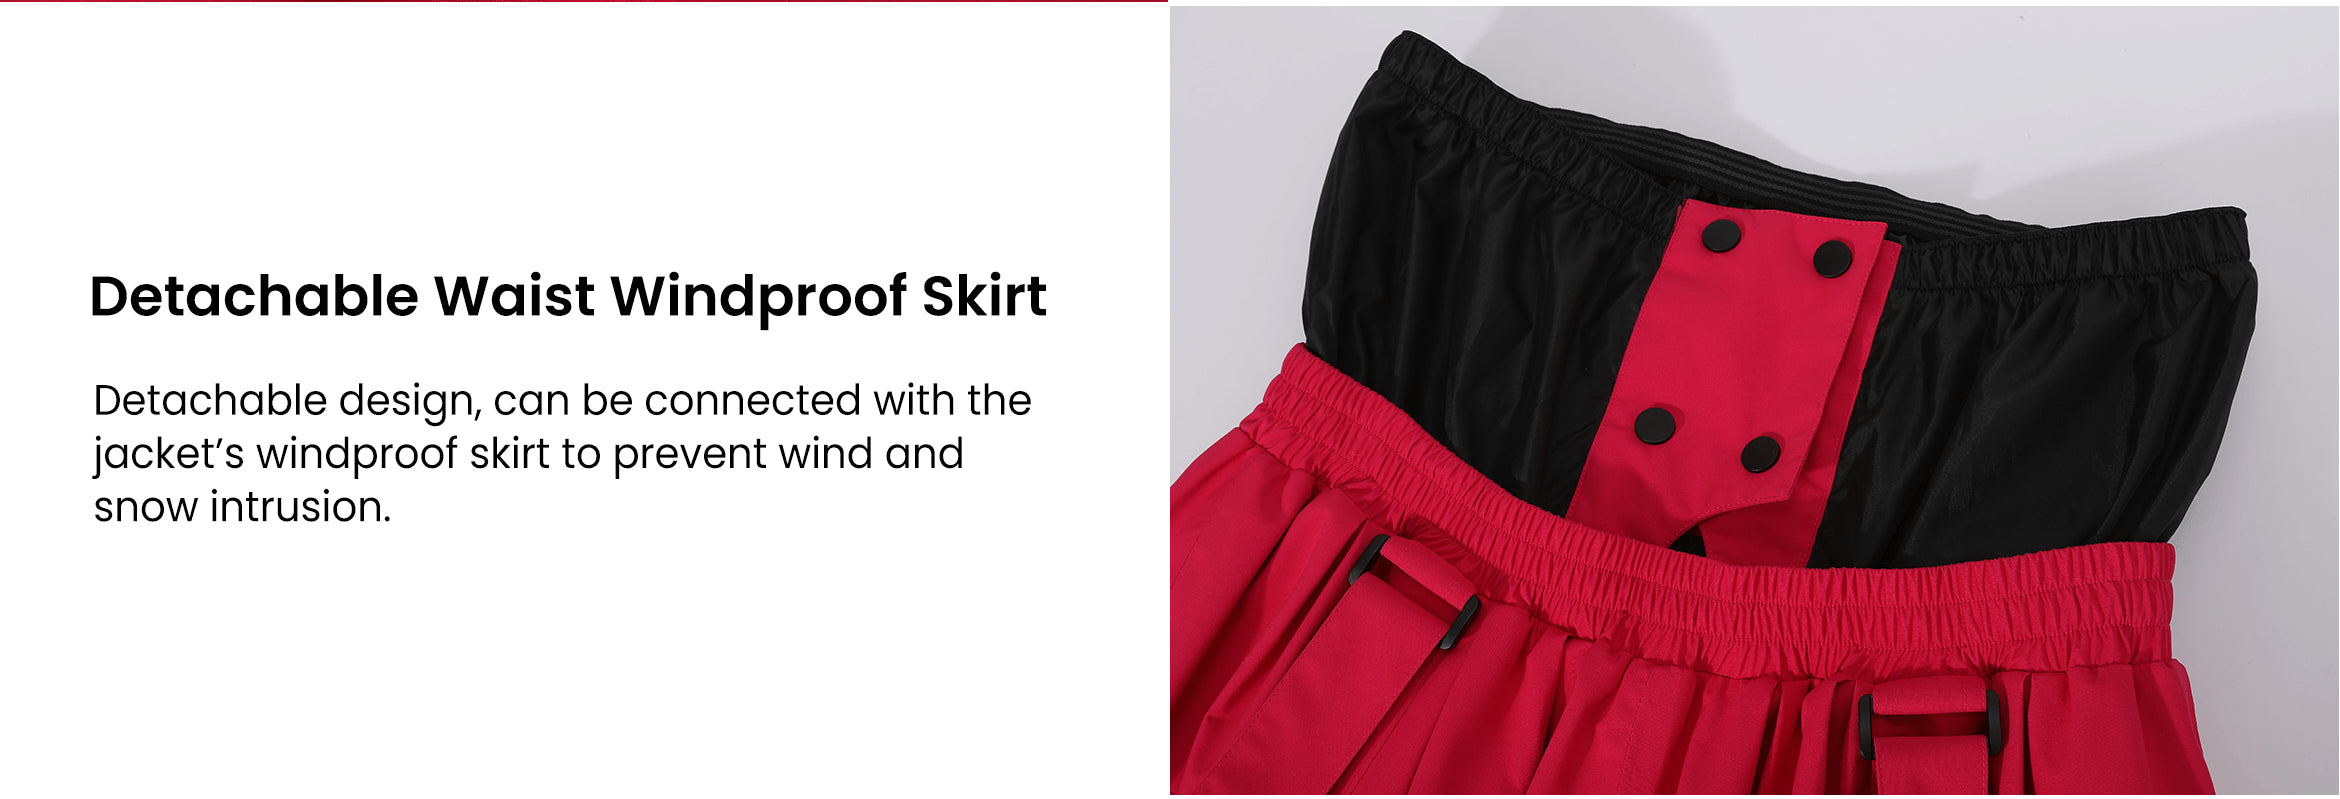 6. Doorek ski pants - Detachable Waist Windproof Skirt